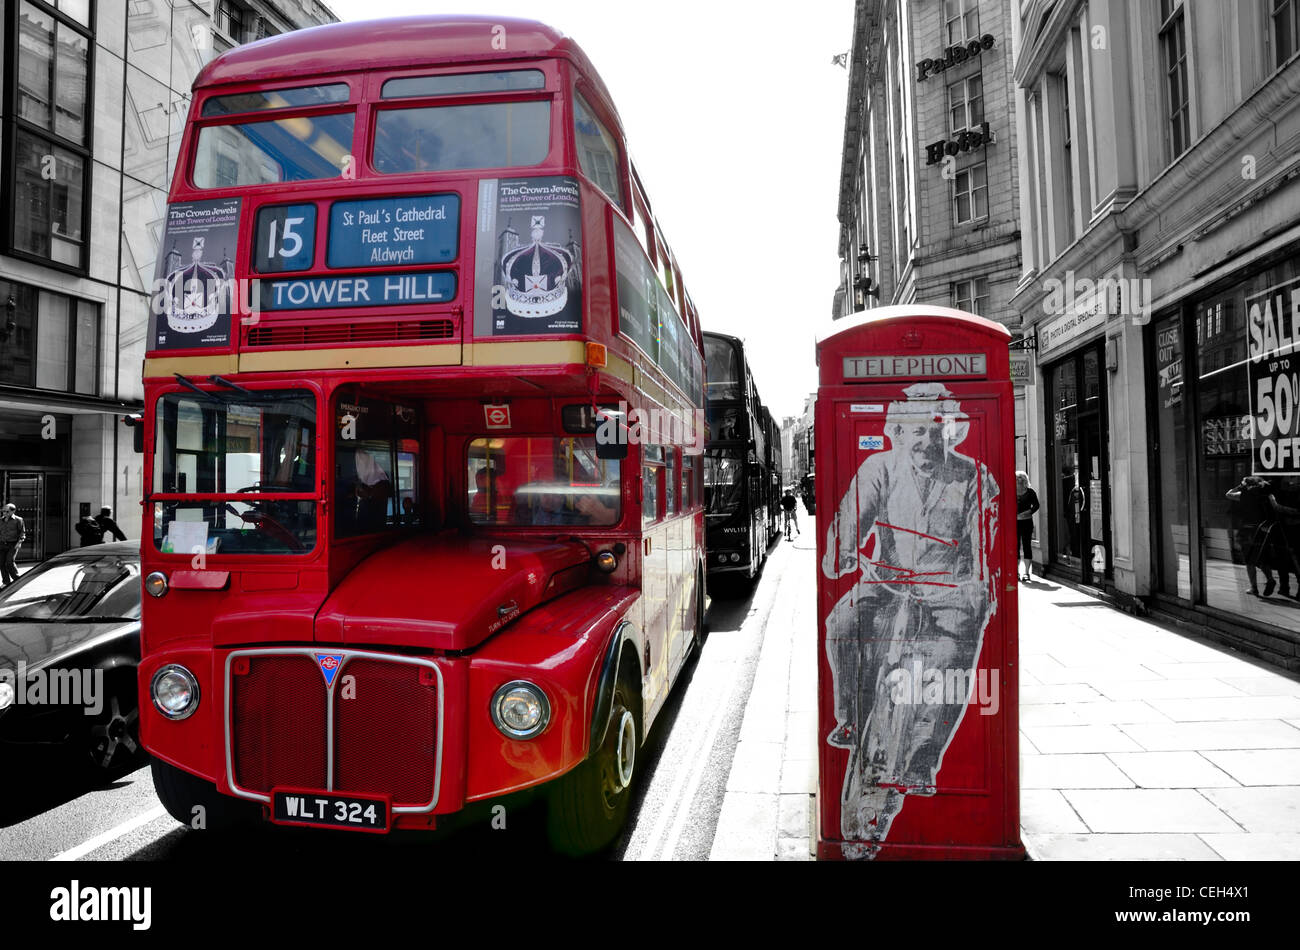 Routemaster Bus Tempo eine klassische rote Telefonzelle mit einem Graffiti-Bild von Einstein drauf. Rot tauchte B&W Hintergrund Stockfoto